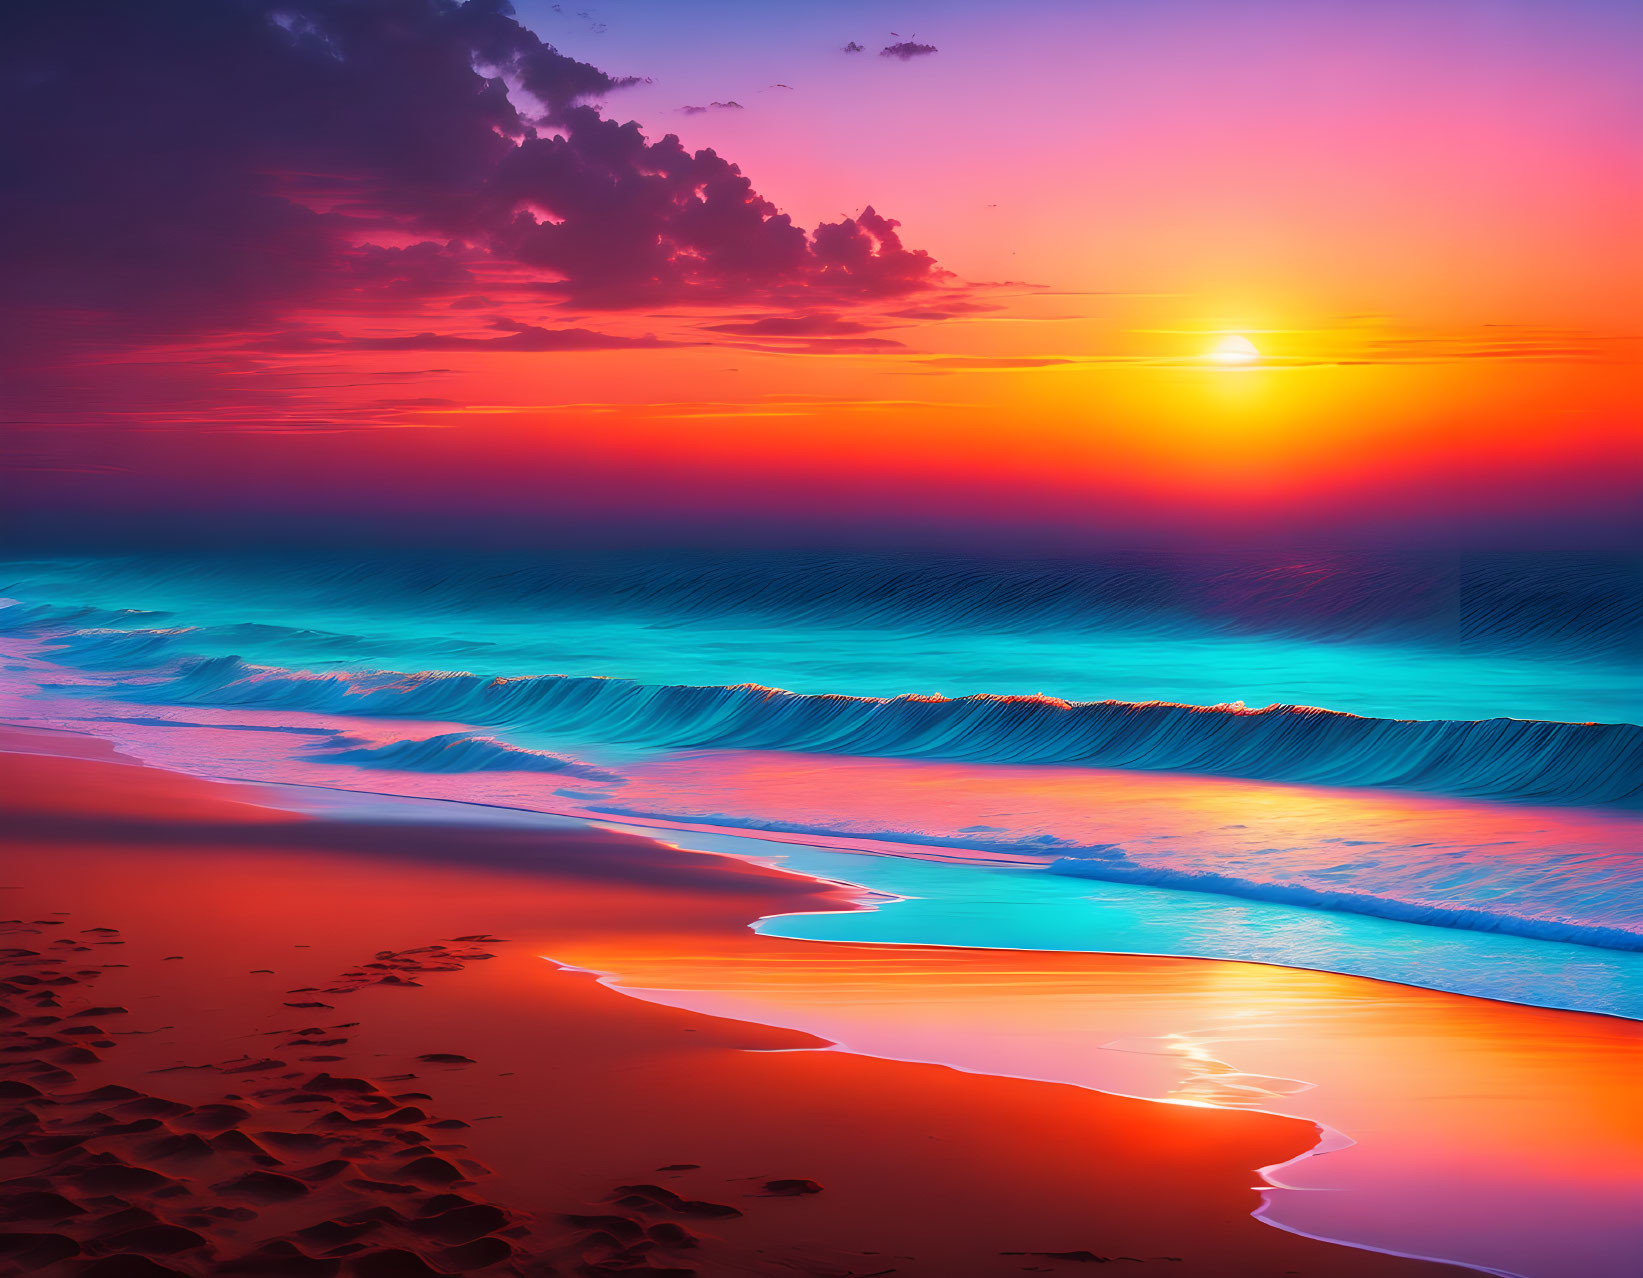 Sunrise on a beach